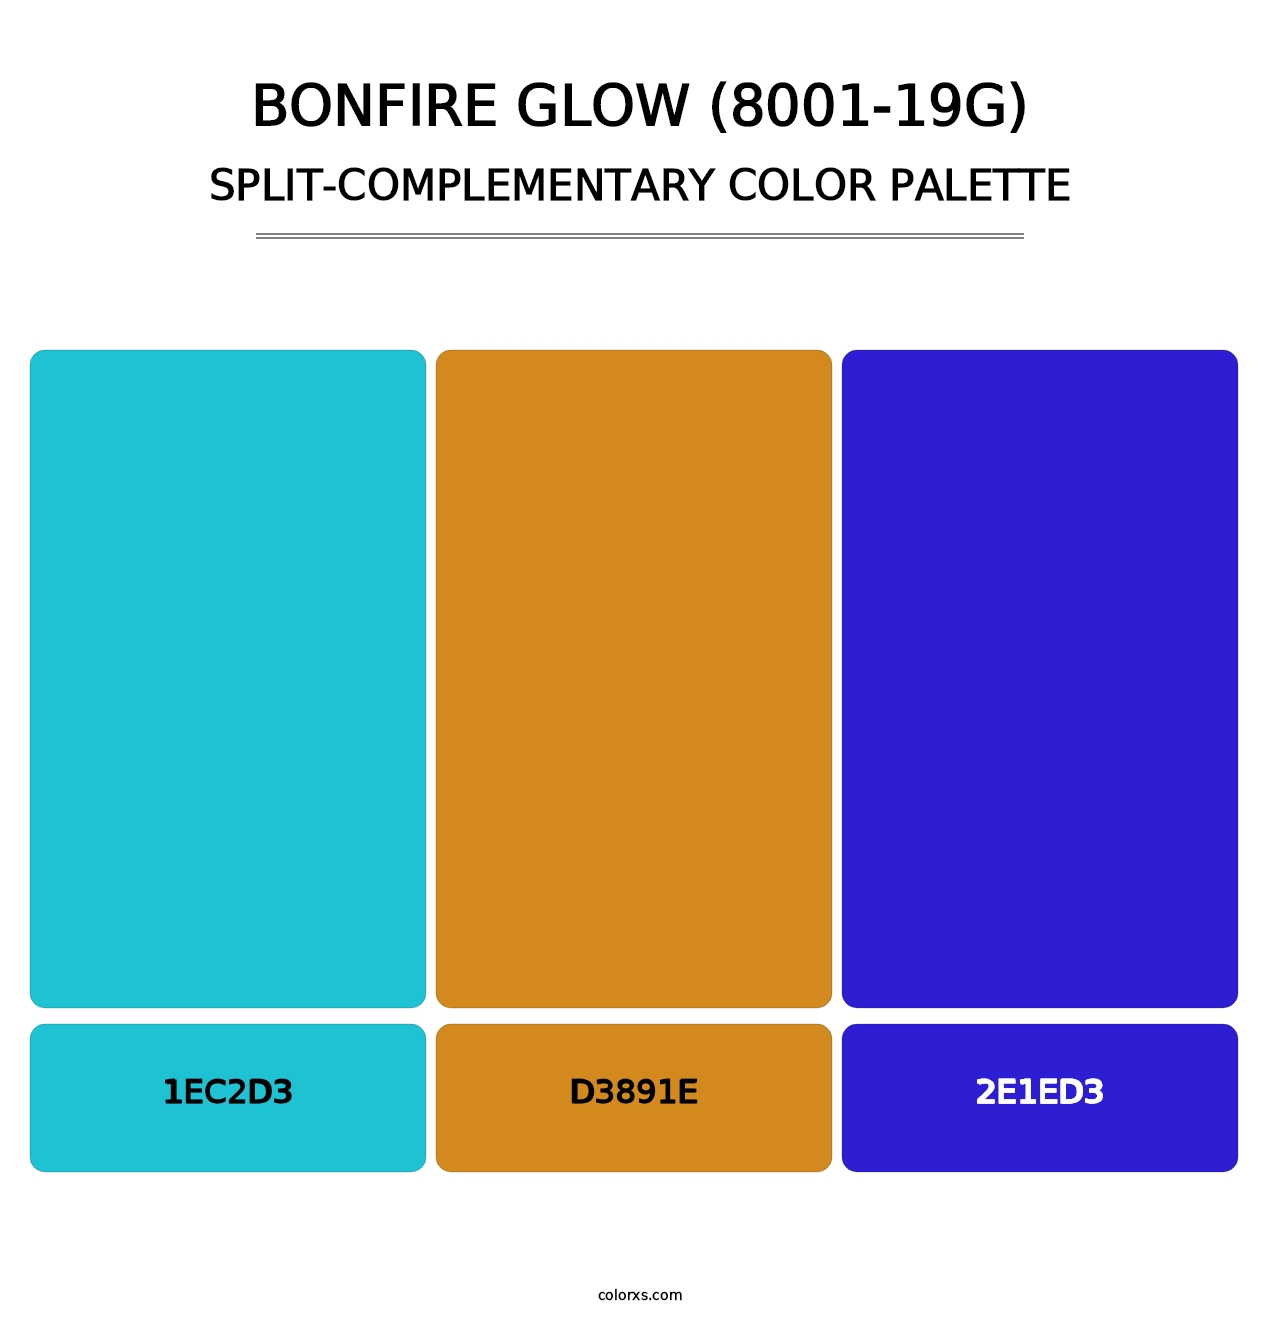 Bonfire Glow (8001-19G) - Split-Complementary Color Palette